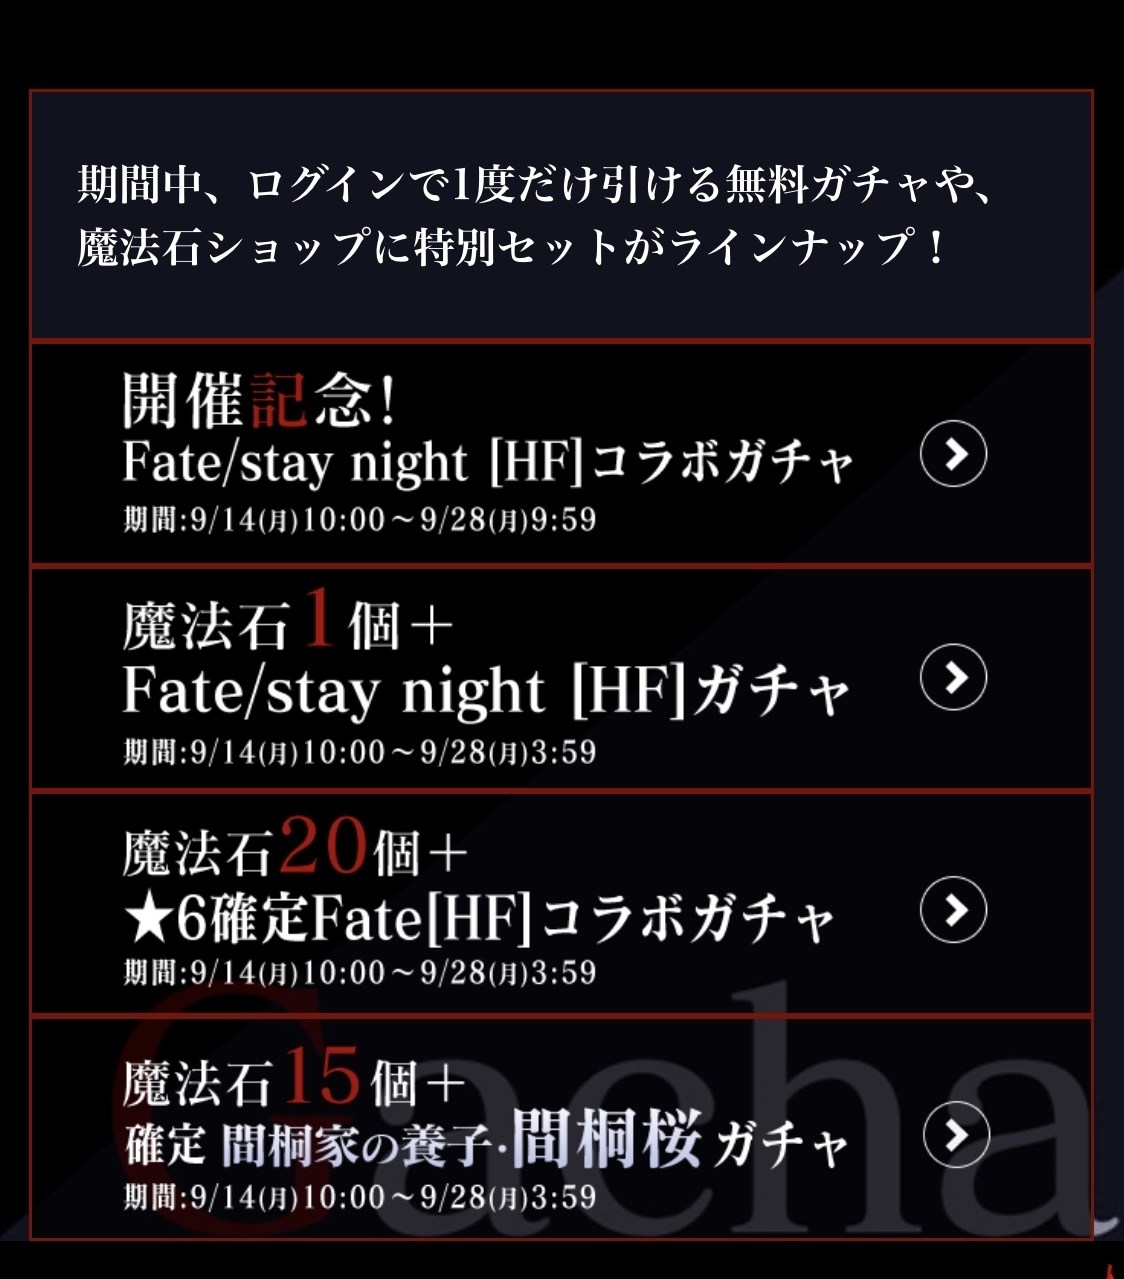 情報 龍族拼圖 X Fate Stay Night Heaven S Feel 第二彈合作9 月14 日展開 龍族拼圖puzzle Dragons 哈啦板 巴哈姆特